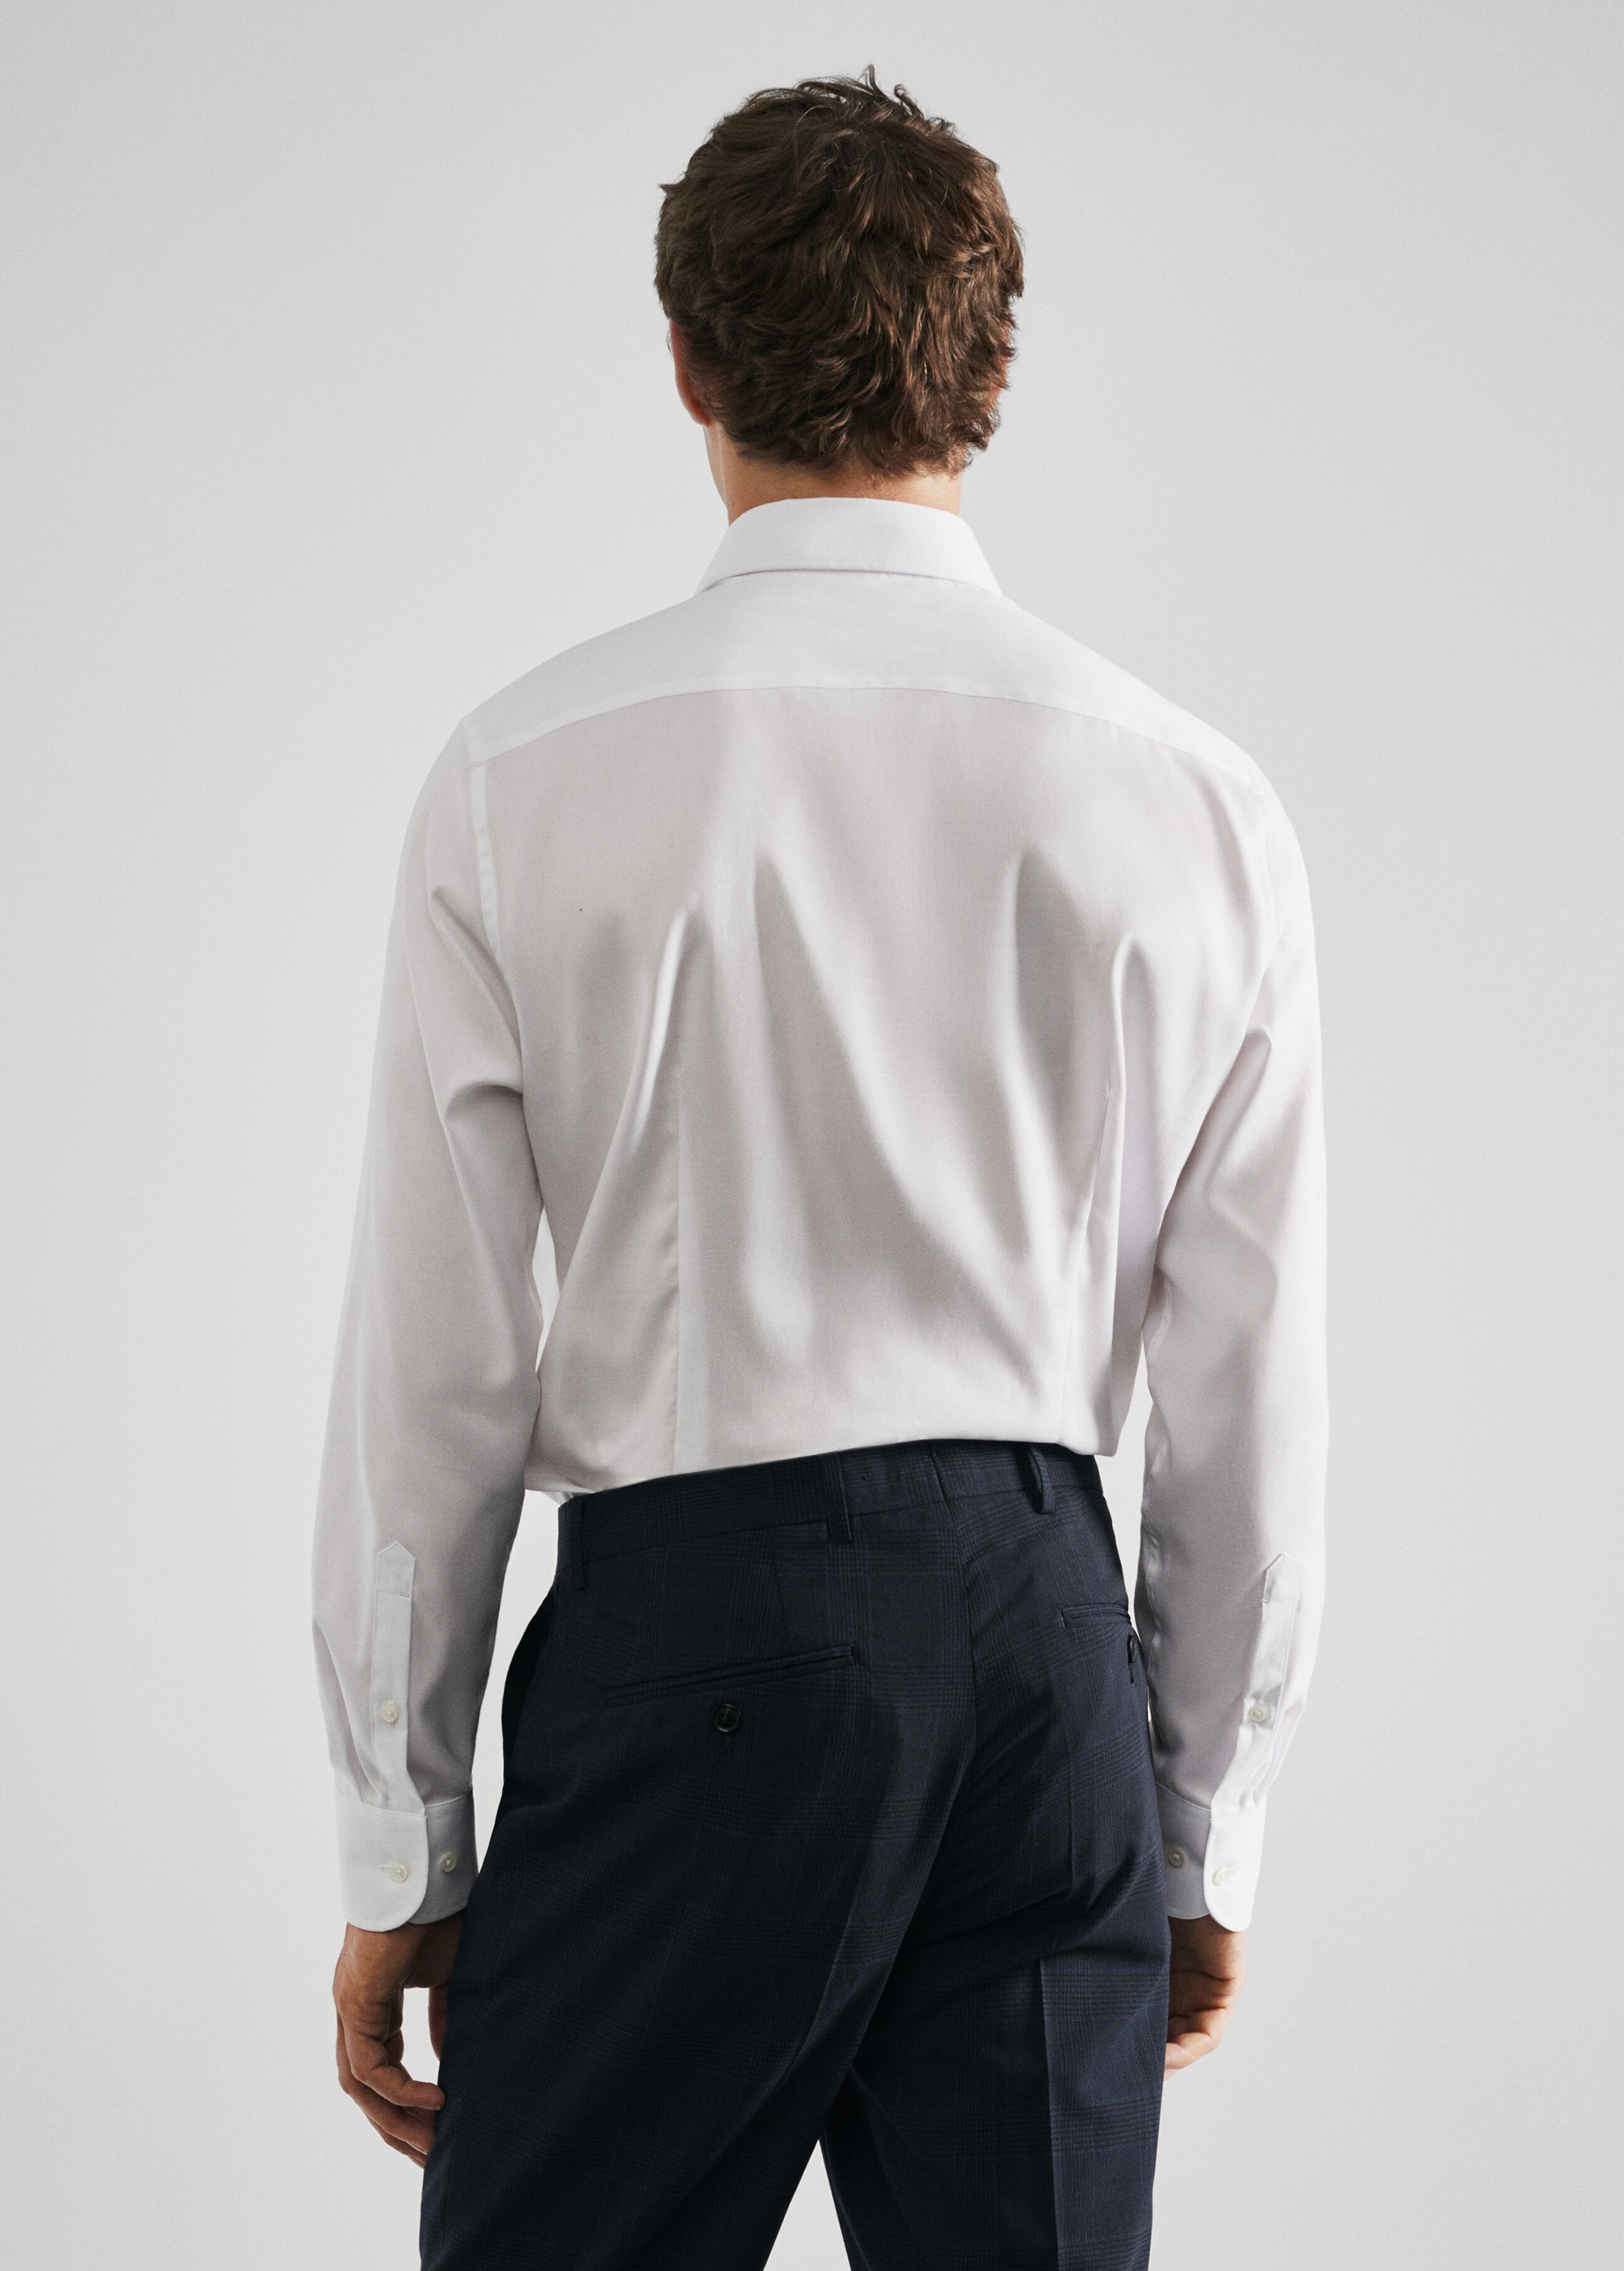 Camisa traje slim fit algodón estructura - Reverso del artículo